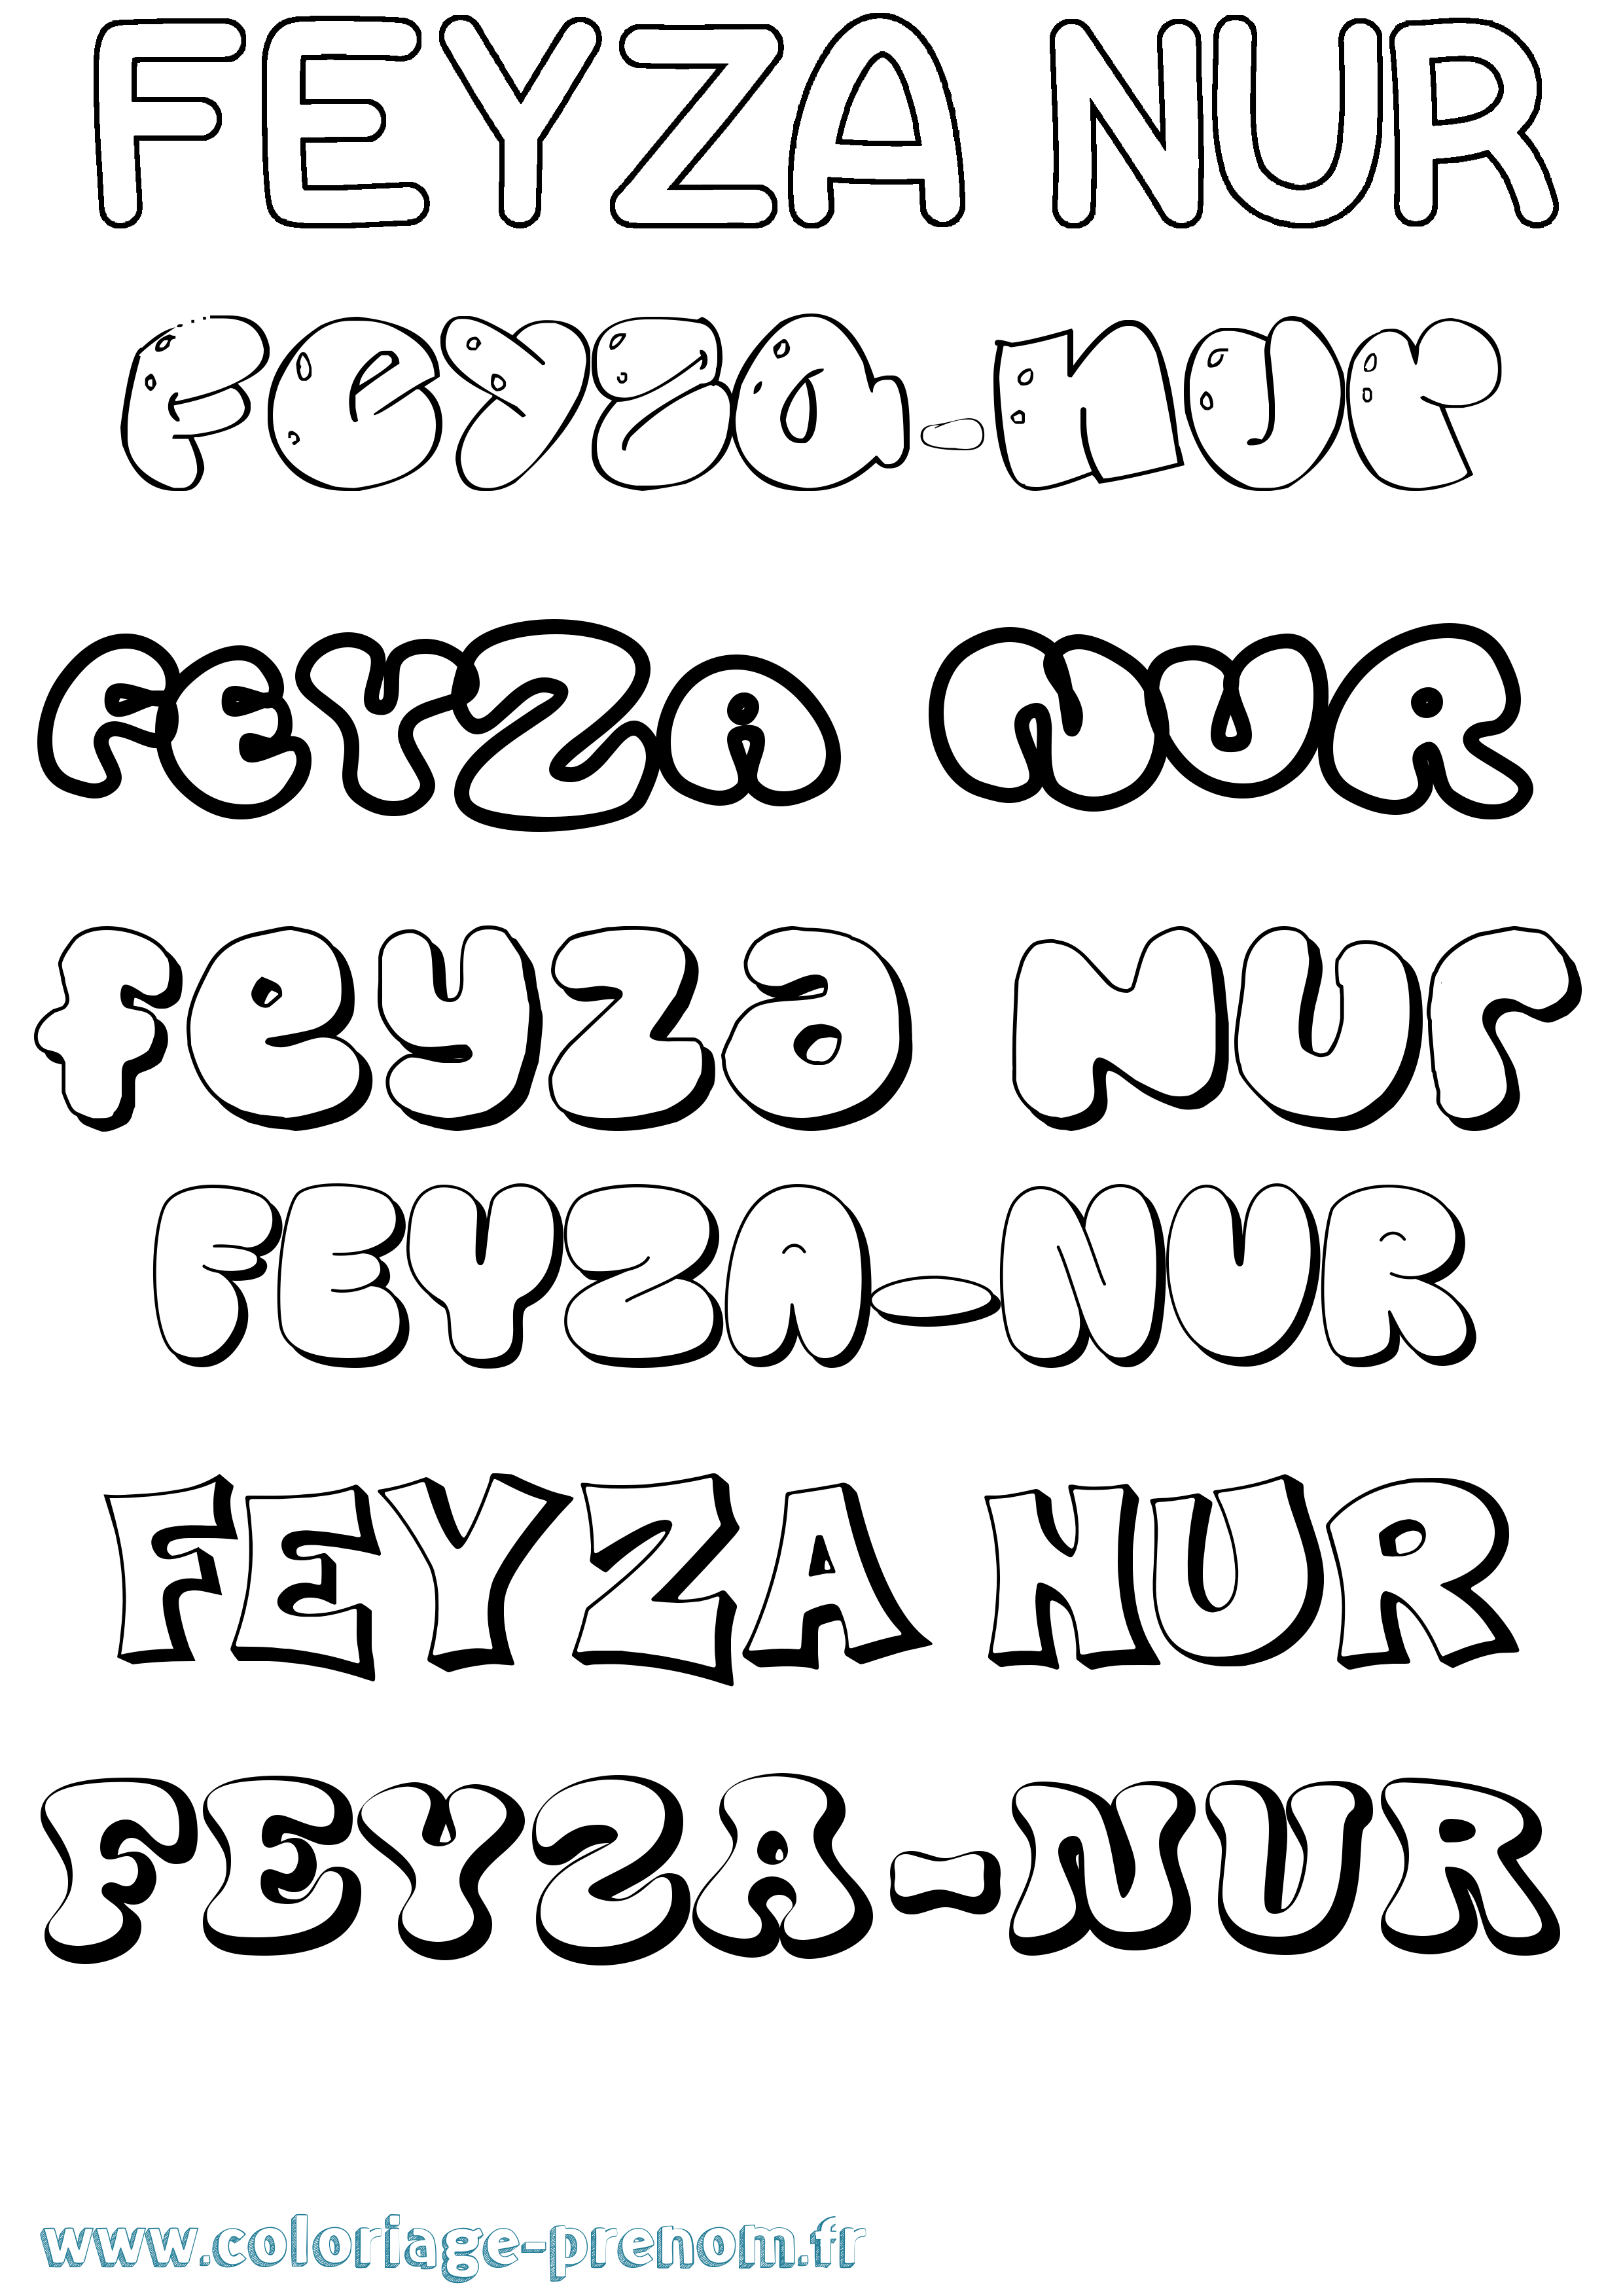 Coloriage prénom Feyza-Nur Bubble